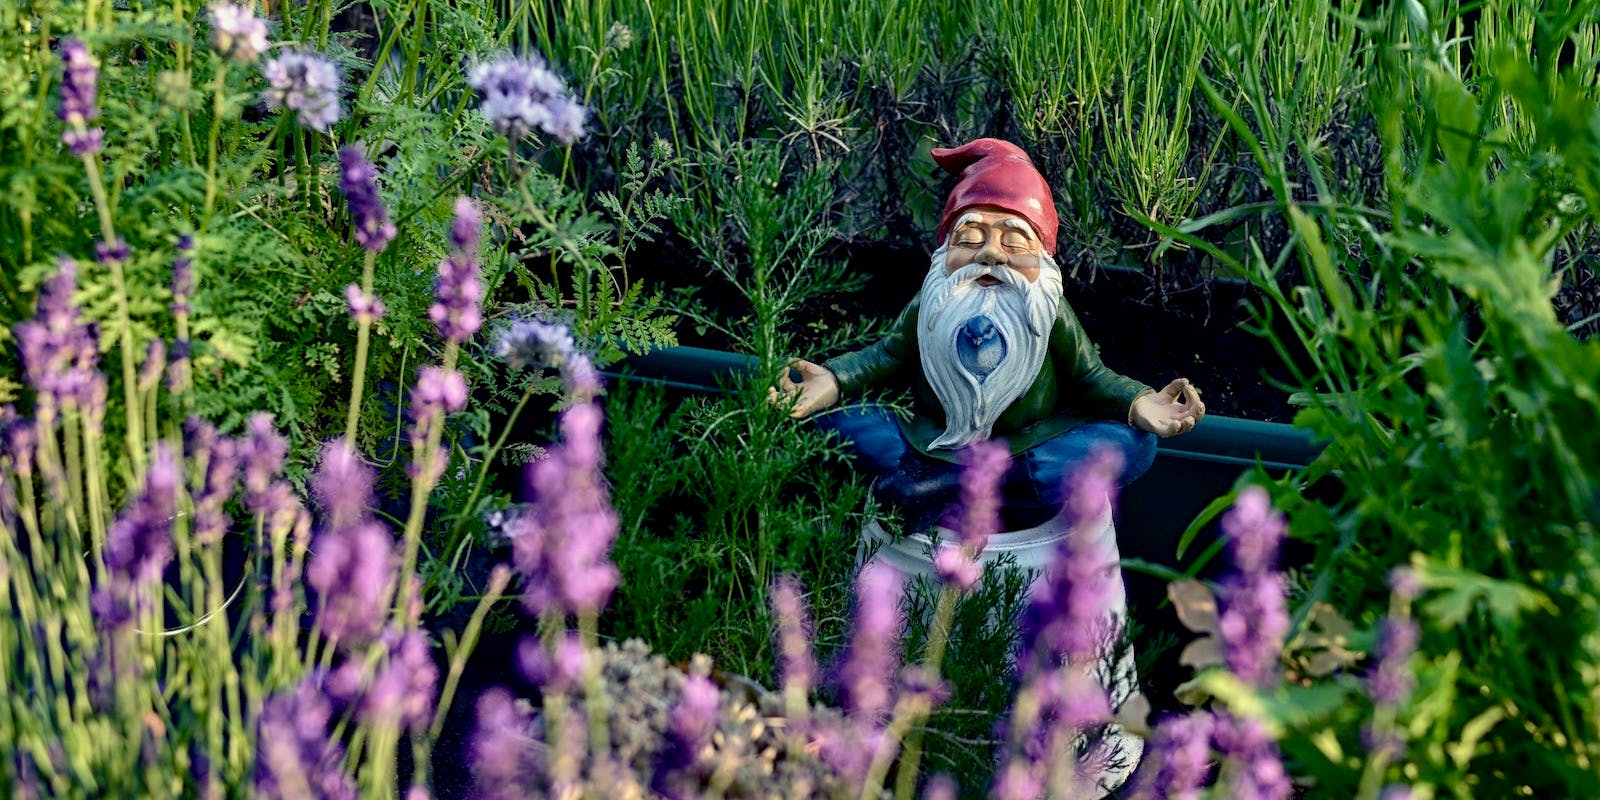 Una estatua de un gnomo meditando se encuentra en un campo de hierba alta y flores moradas